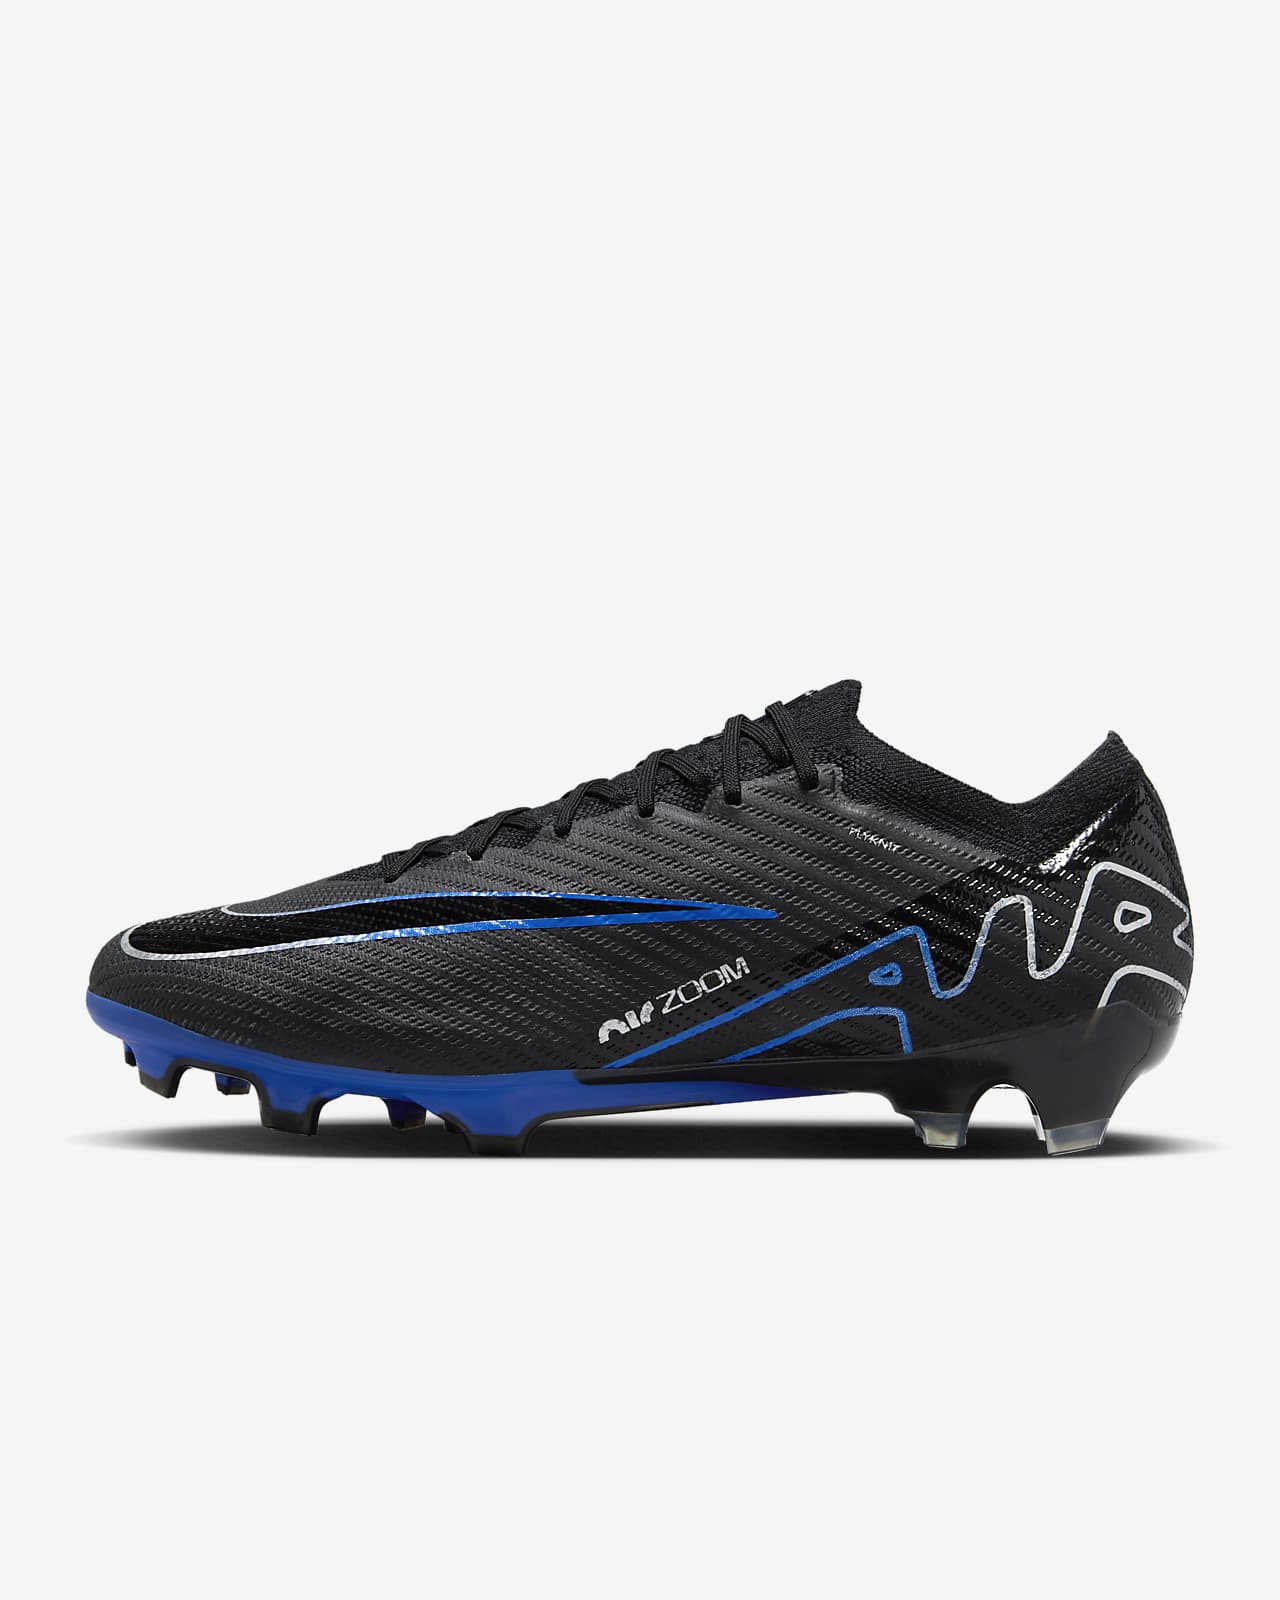 Chaussure de foot basse à crampons pour terrain sec Nike Mercurial Vapor 15 Elite